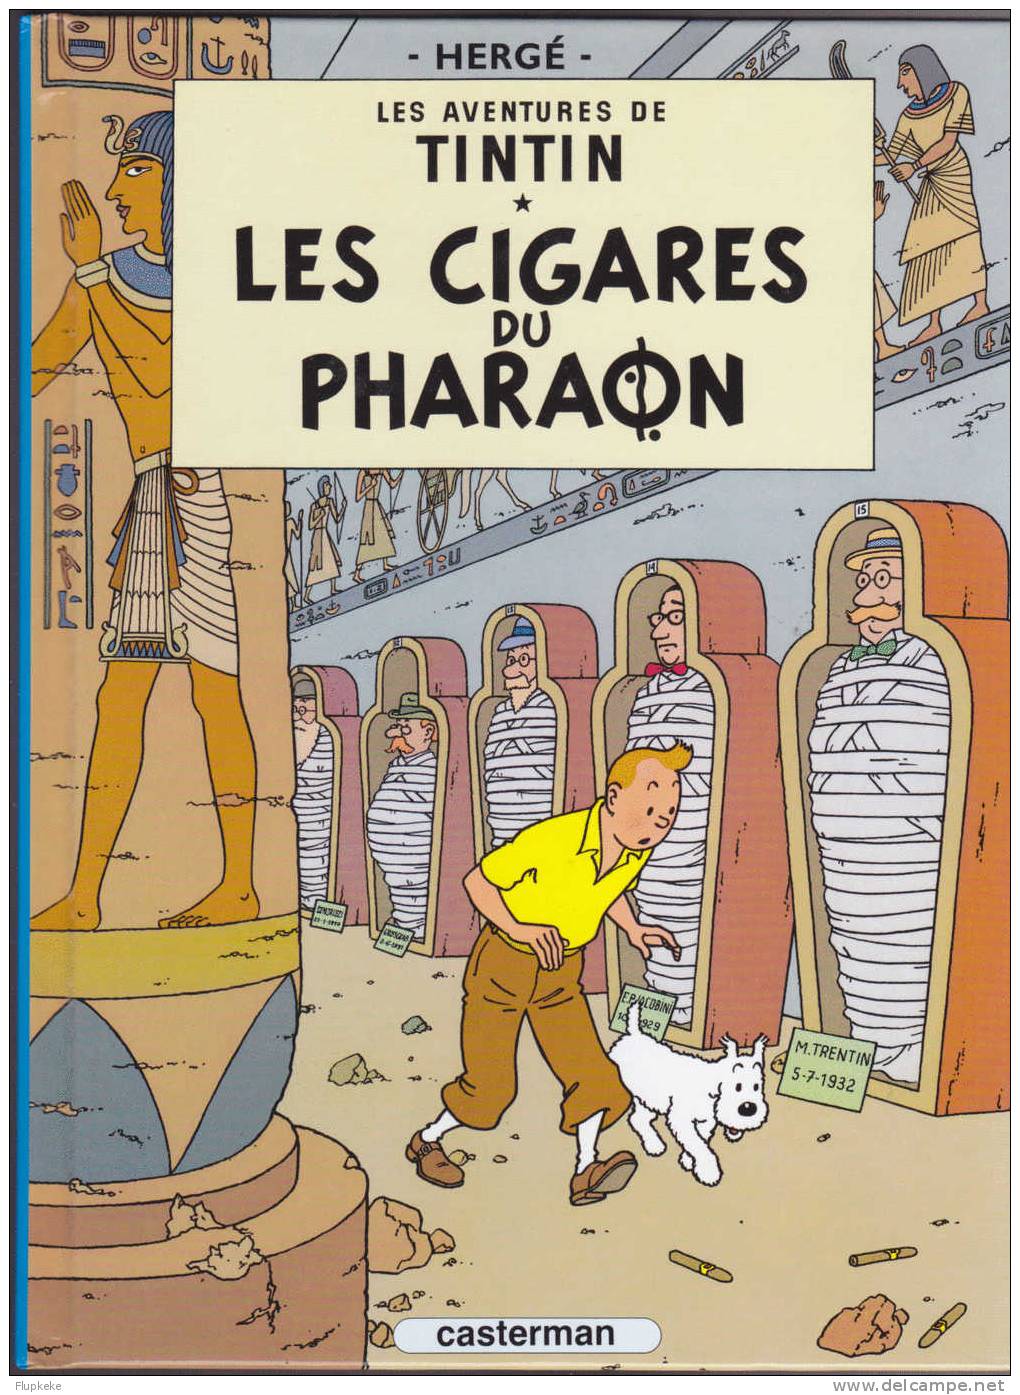 Les Aventures de Tintin 2004 série complète des 7 volumes édités en septembre 2004 en complément du journal Le Soir